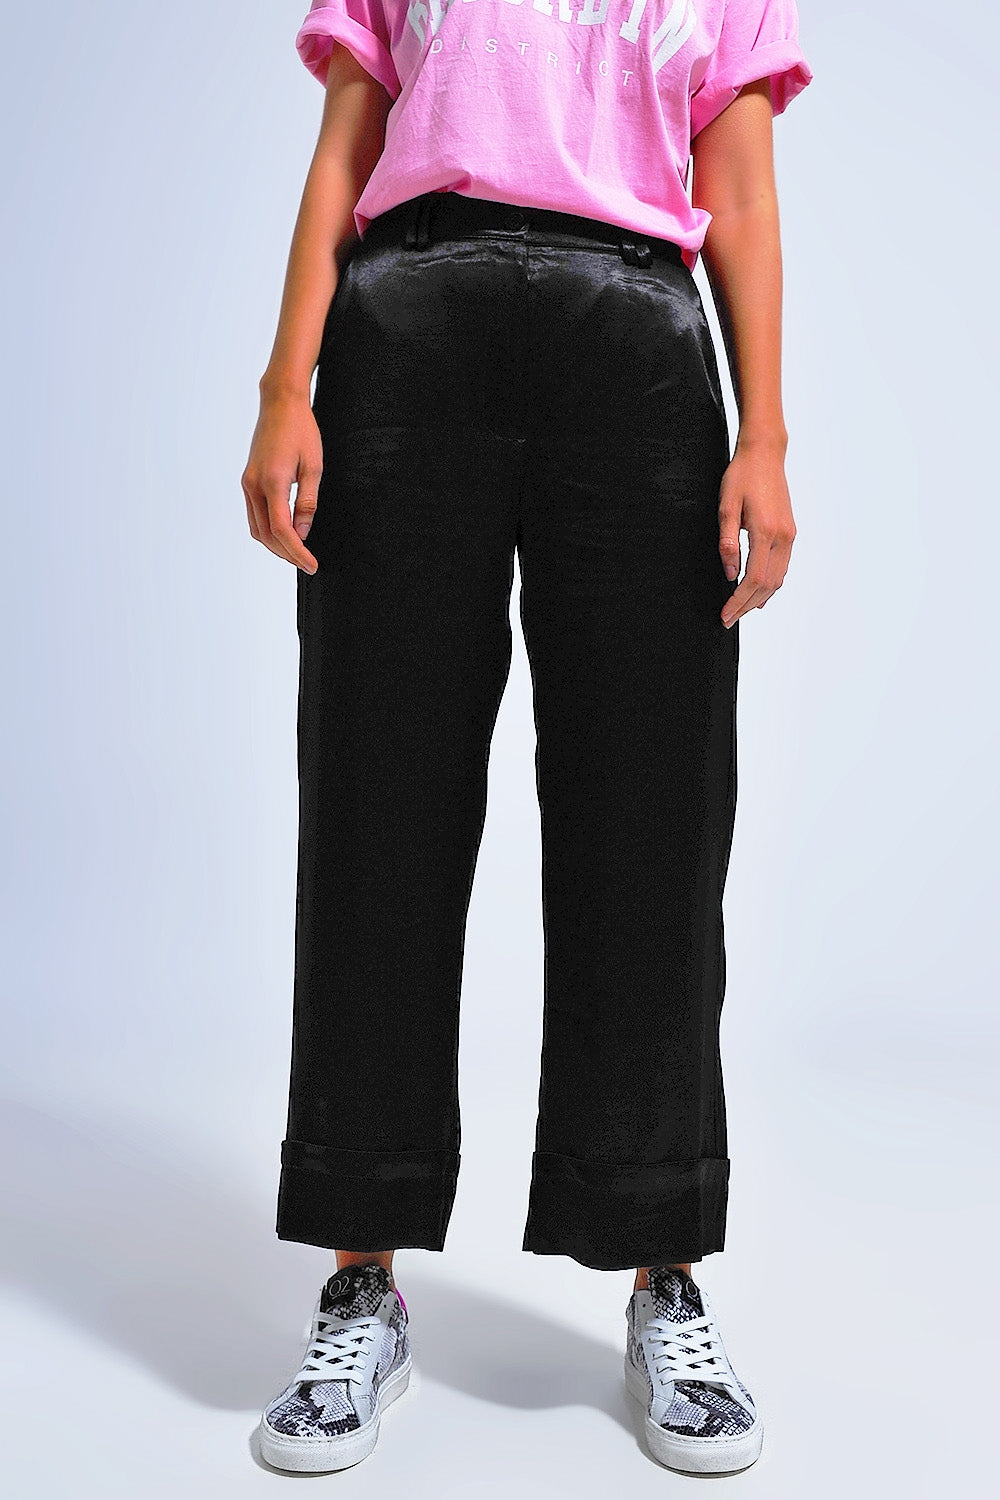 Satin wide leg suit Pants in black Szua Store